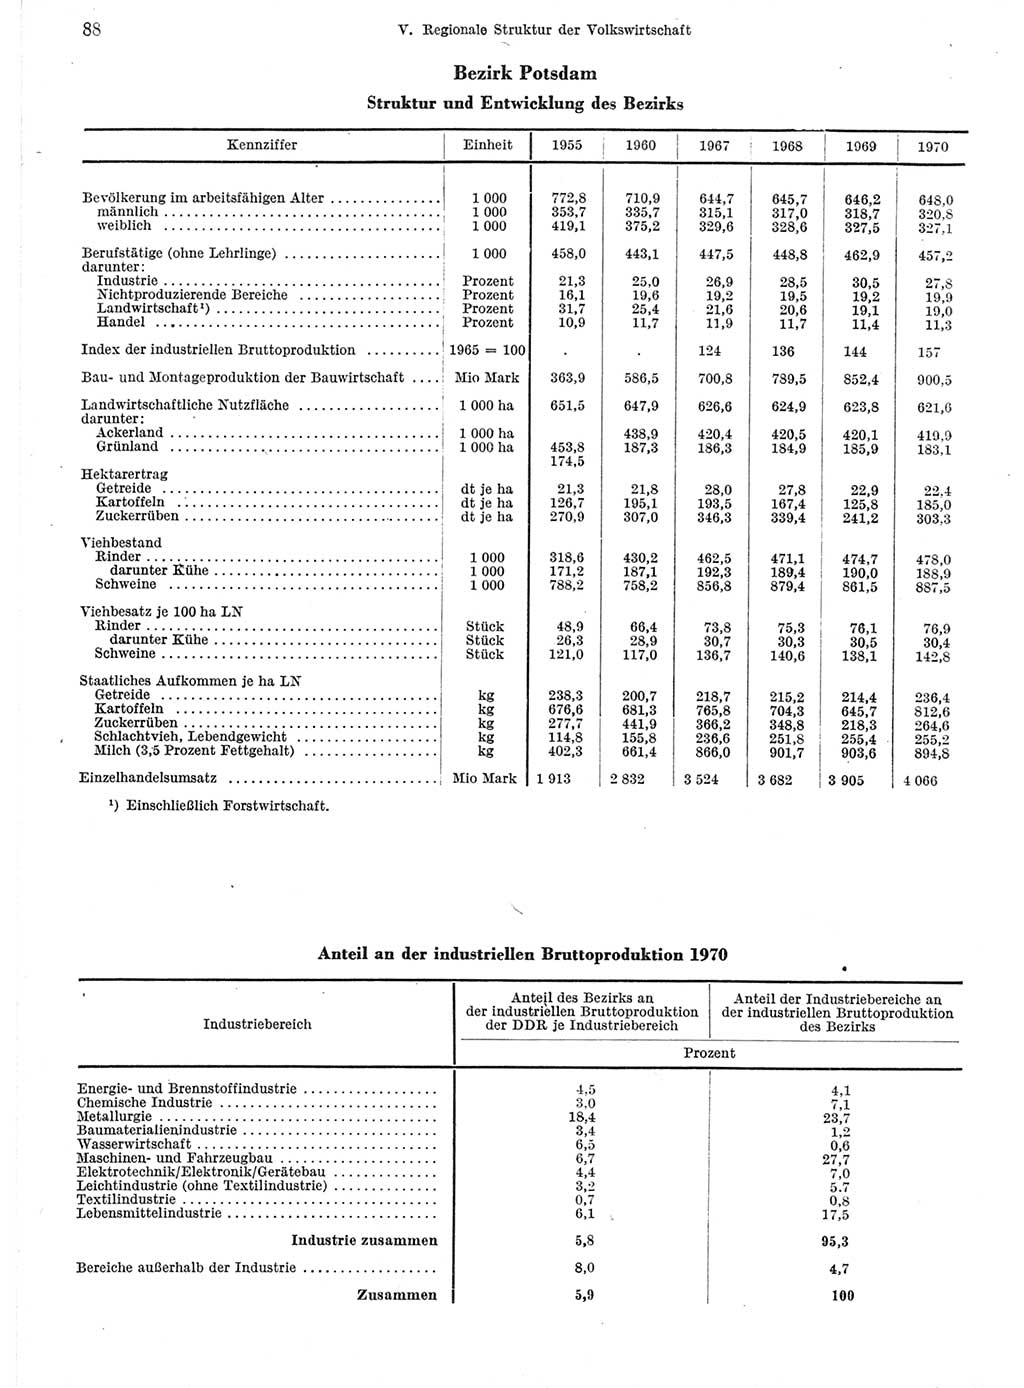 Statistisches Jahrbuch der Deutschen Demokratischen Republik (DDR) 1971, Seite 88 (Stat. Jb. DDR 1971, S. 88)